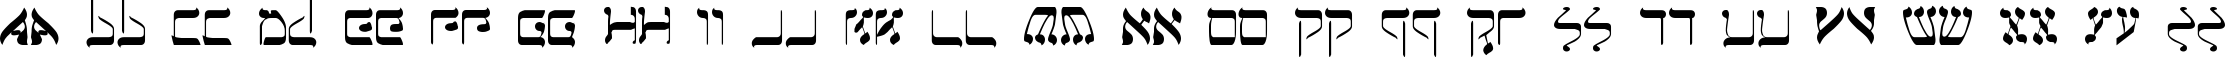 Пример написания английского алфавита шрифтом Jerusalem